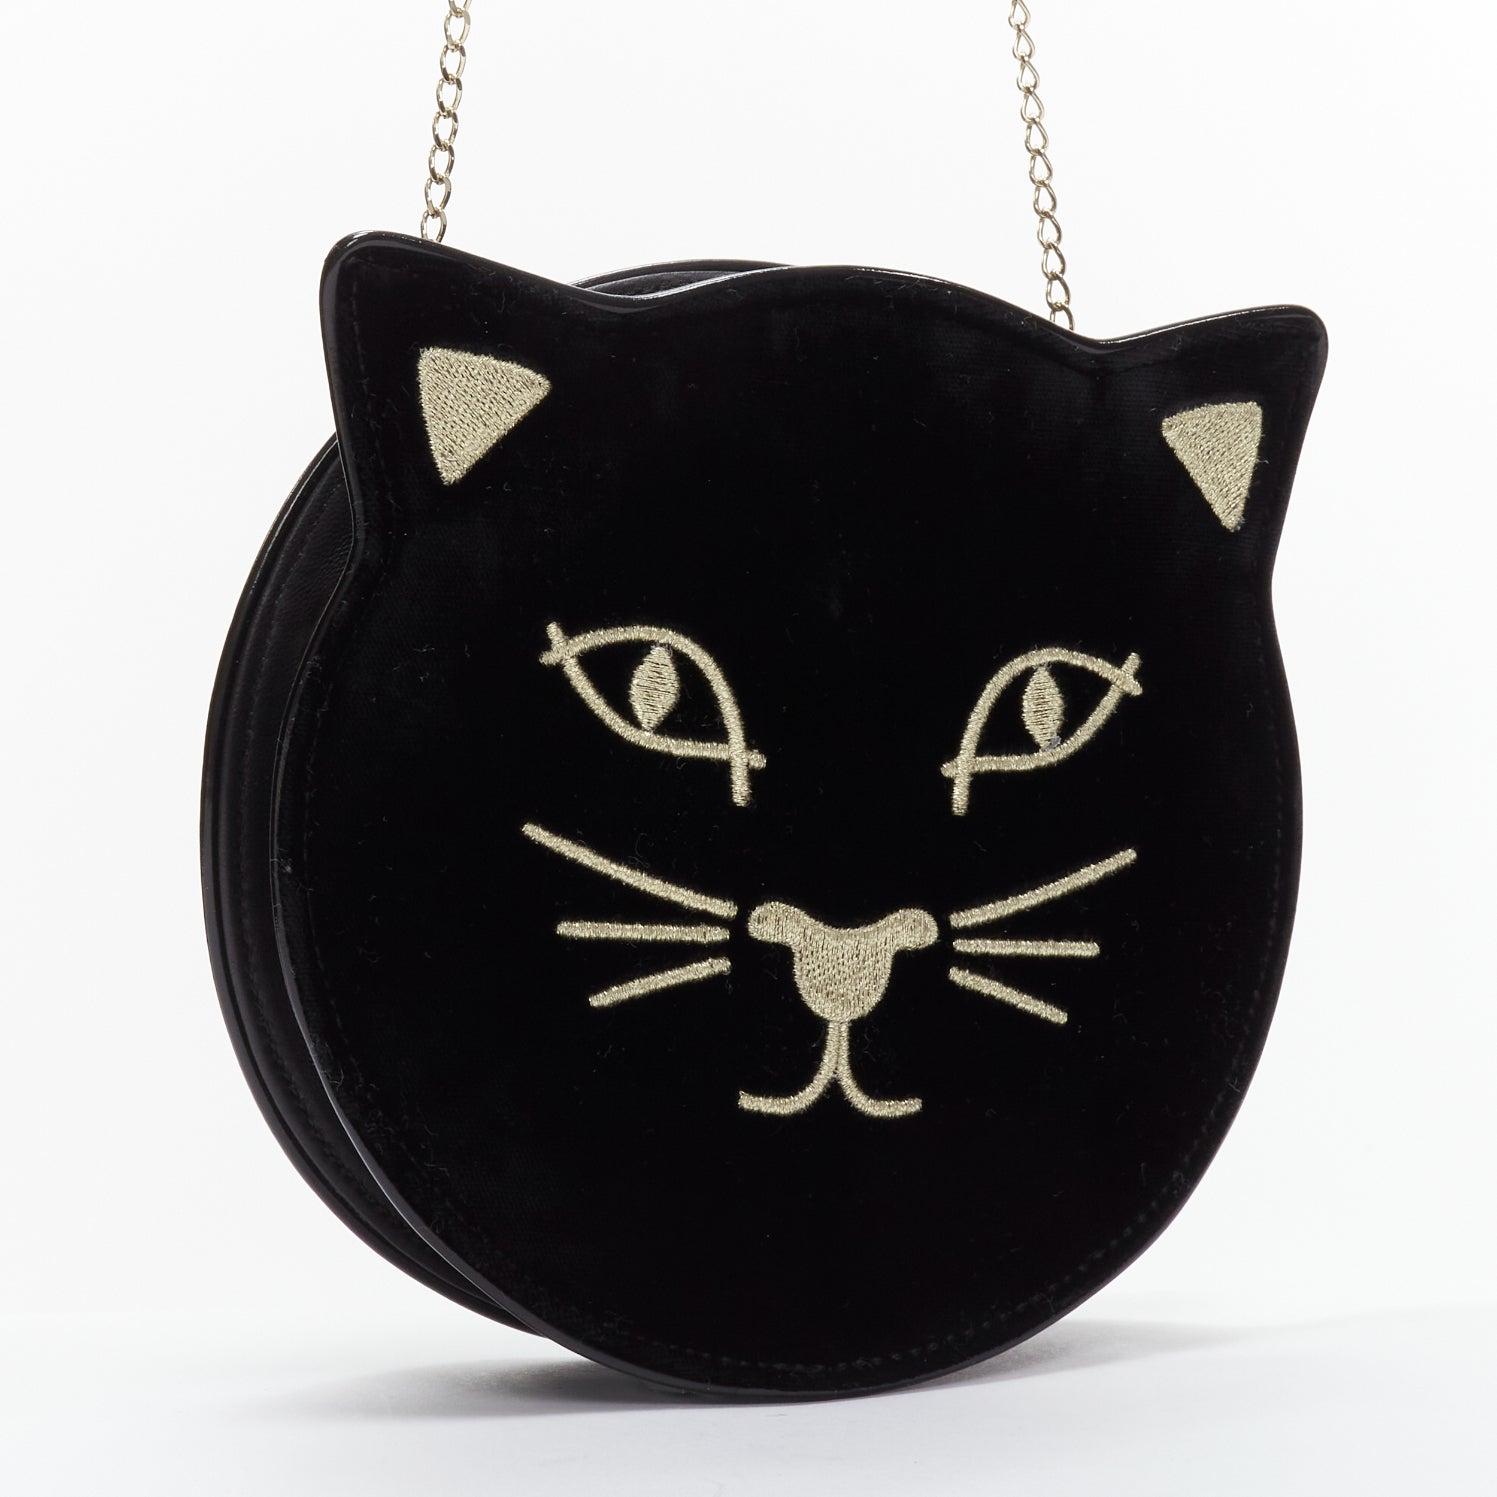 Black CHARLOTTE OLYMPIA Kitty black velvet gold embroidered crossbody bag